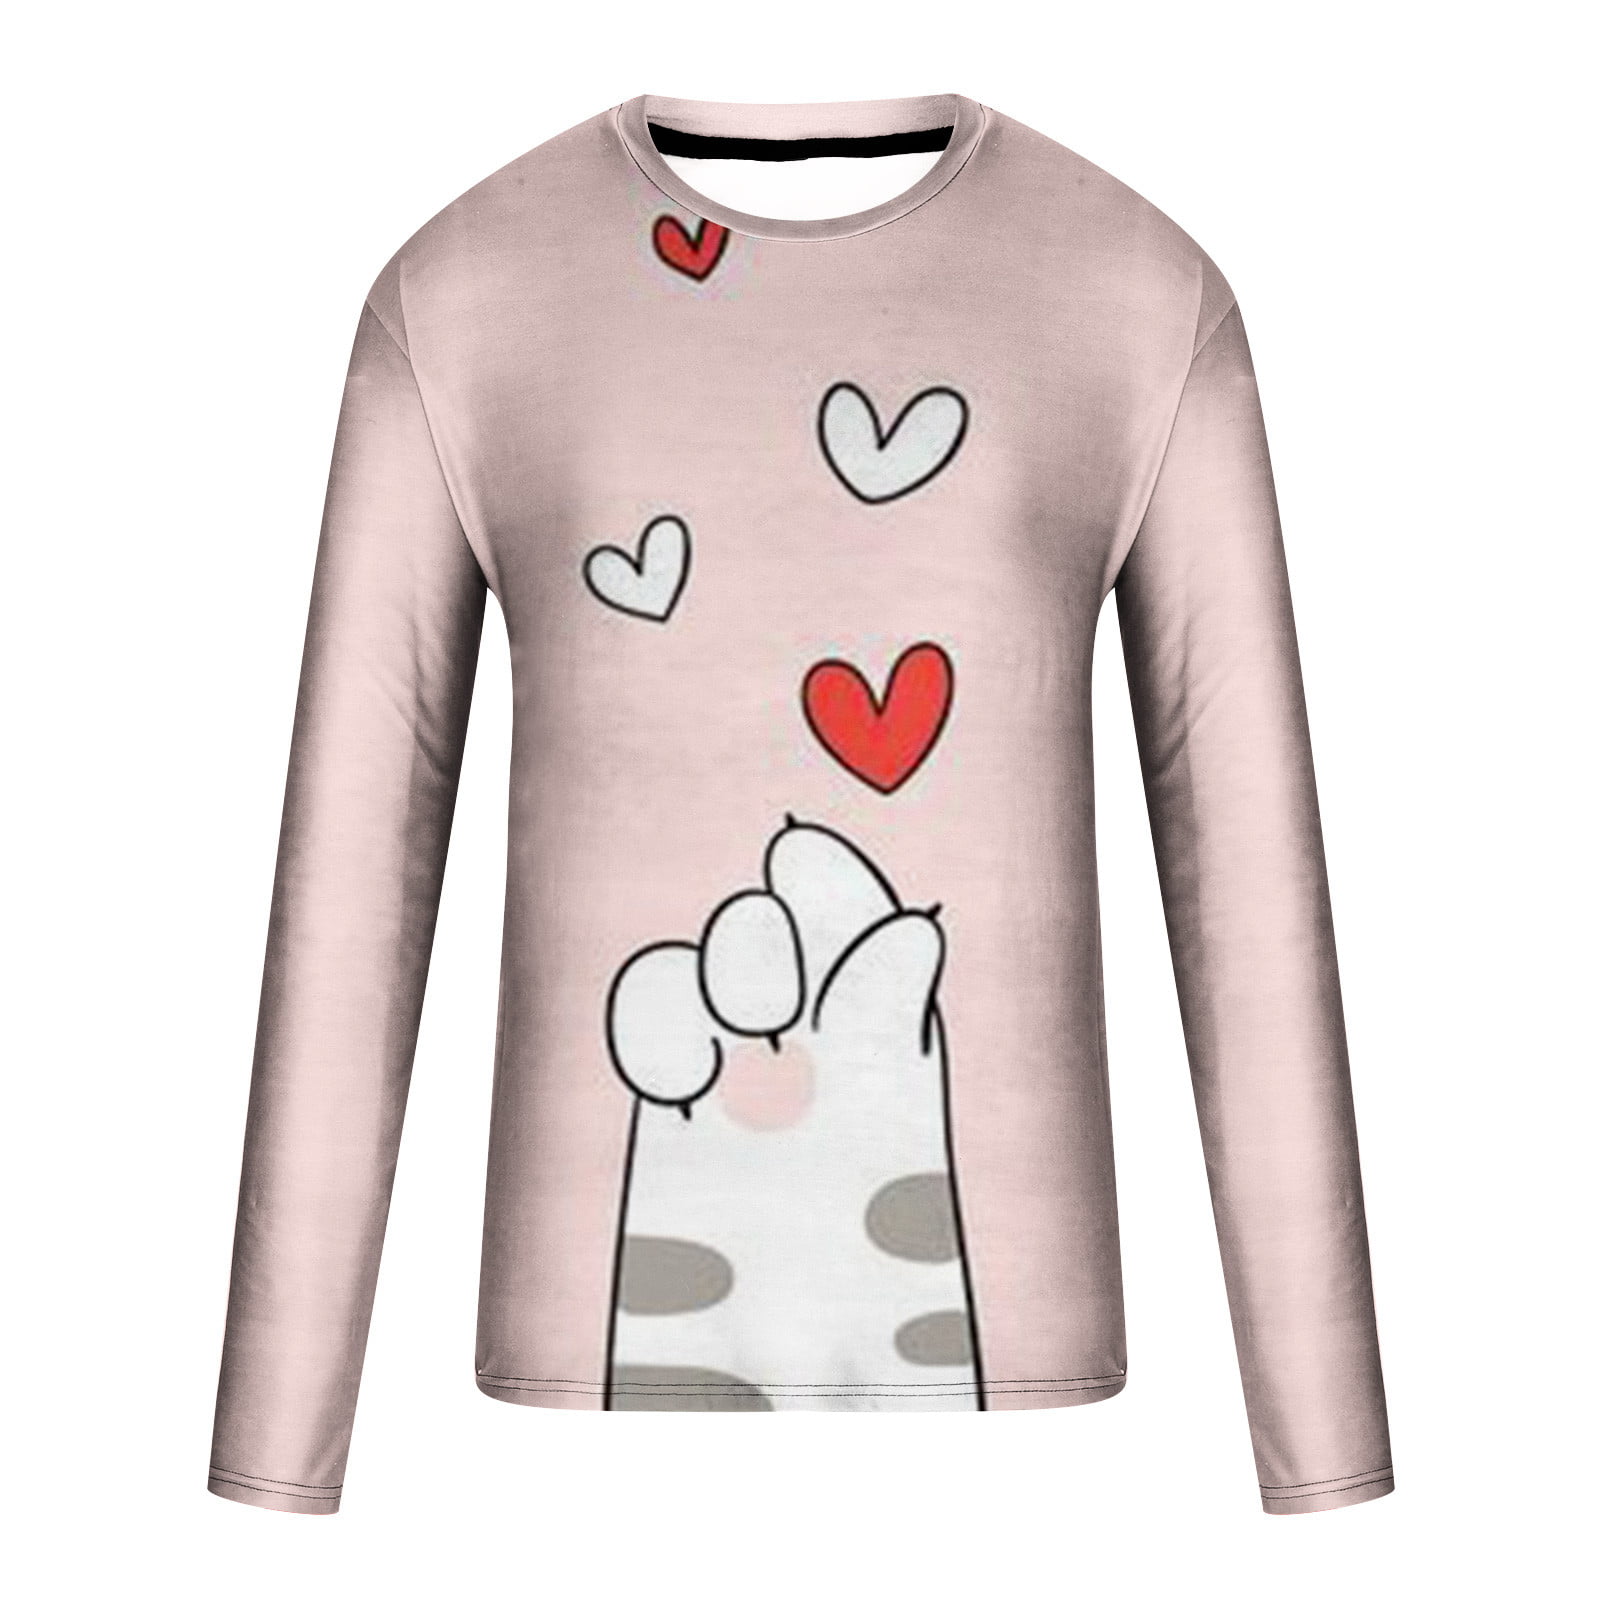 Cute Shirt With Heart Em 2021 603  Camisetas, Pegatinas para ropa,  Imagenes de camisetas